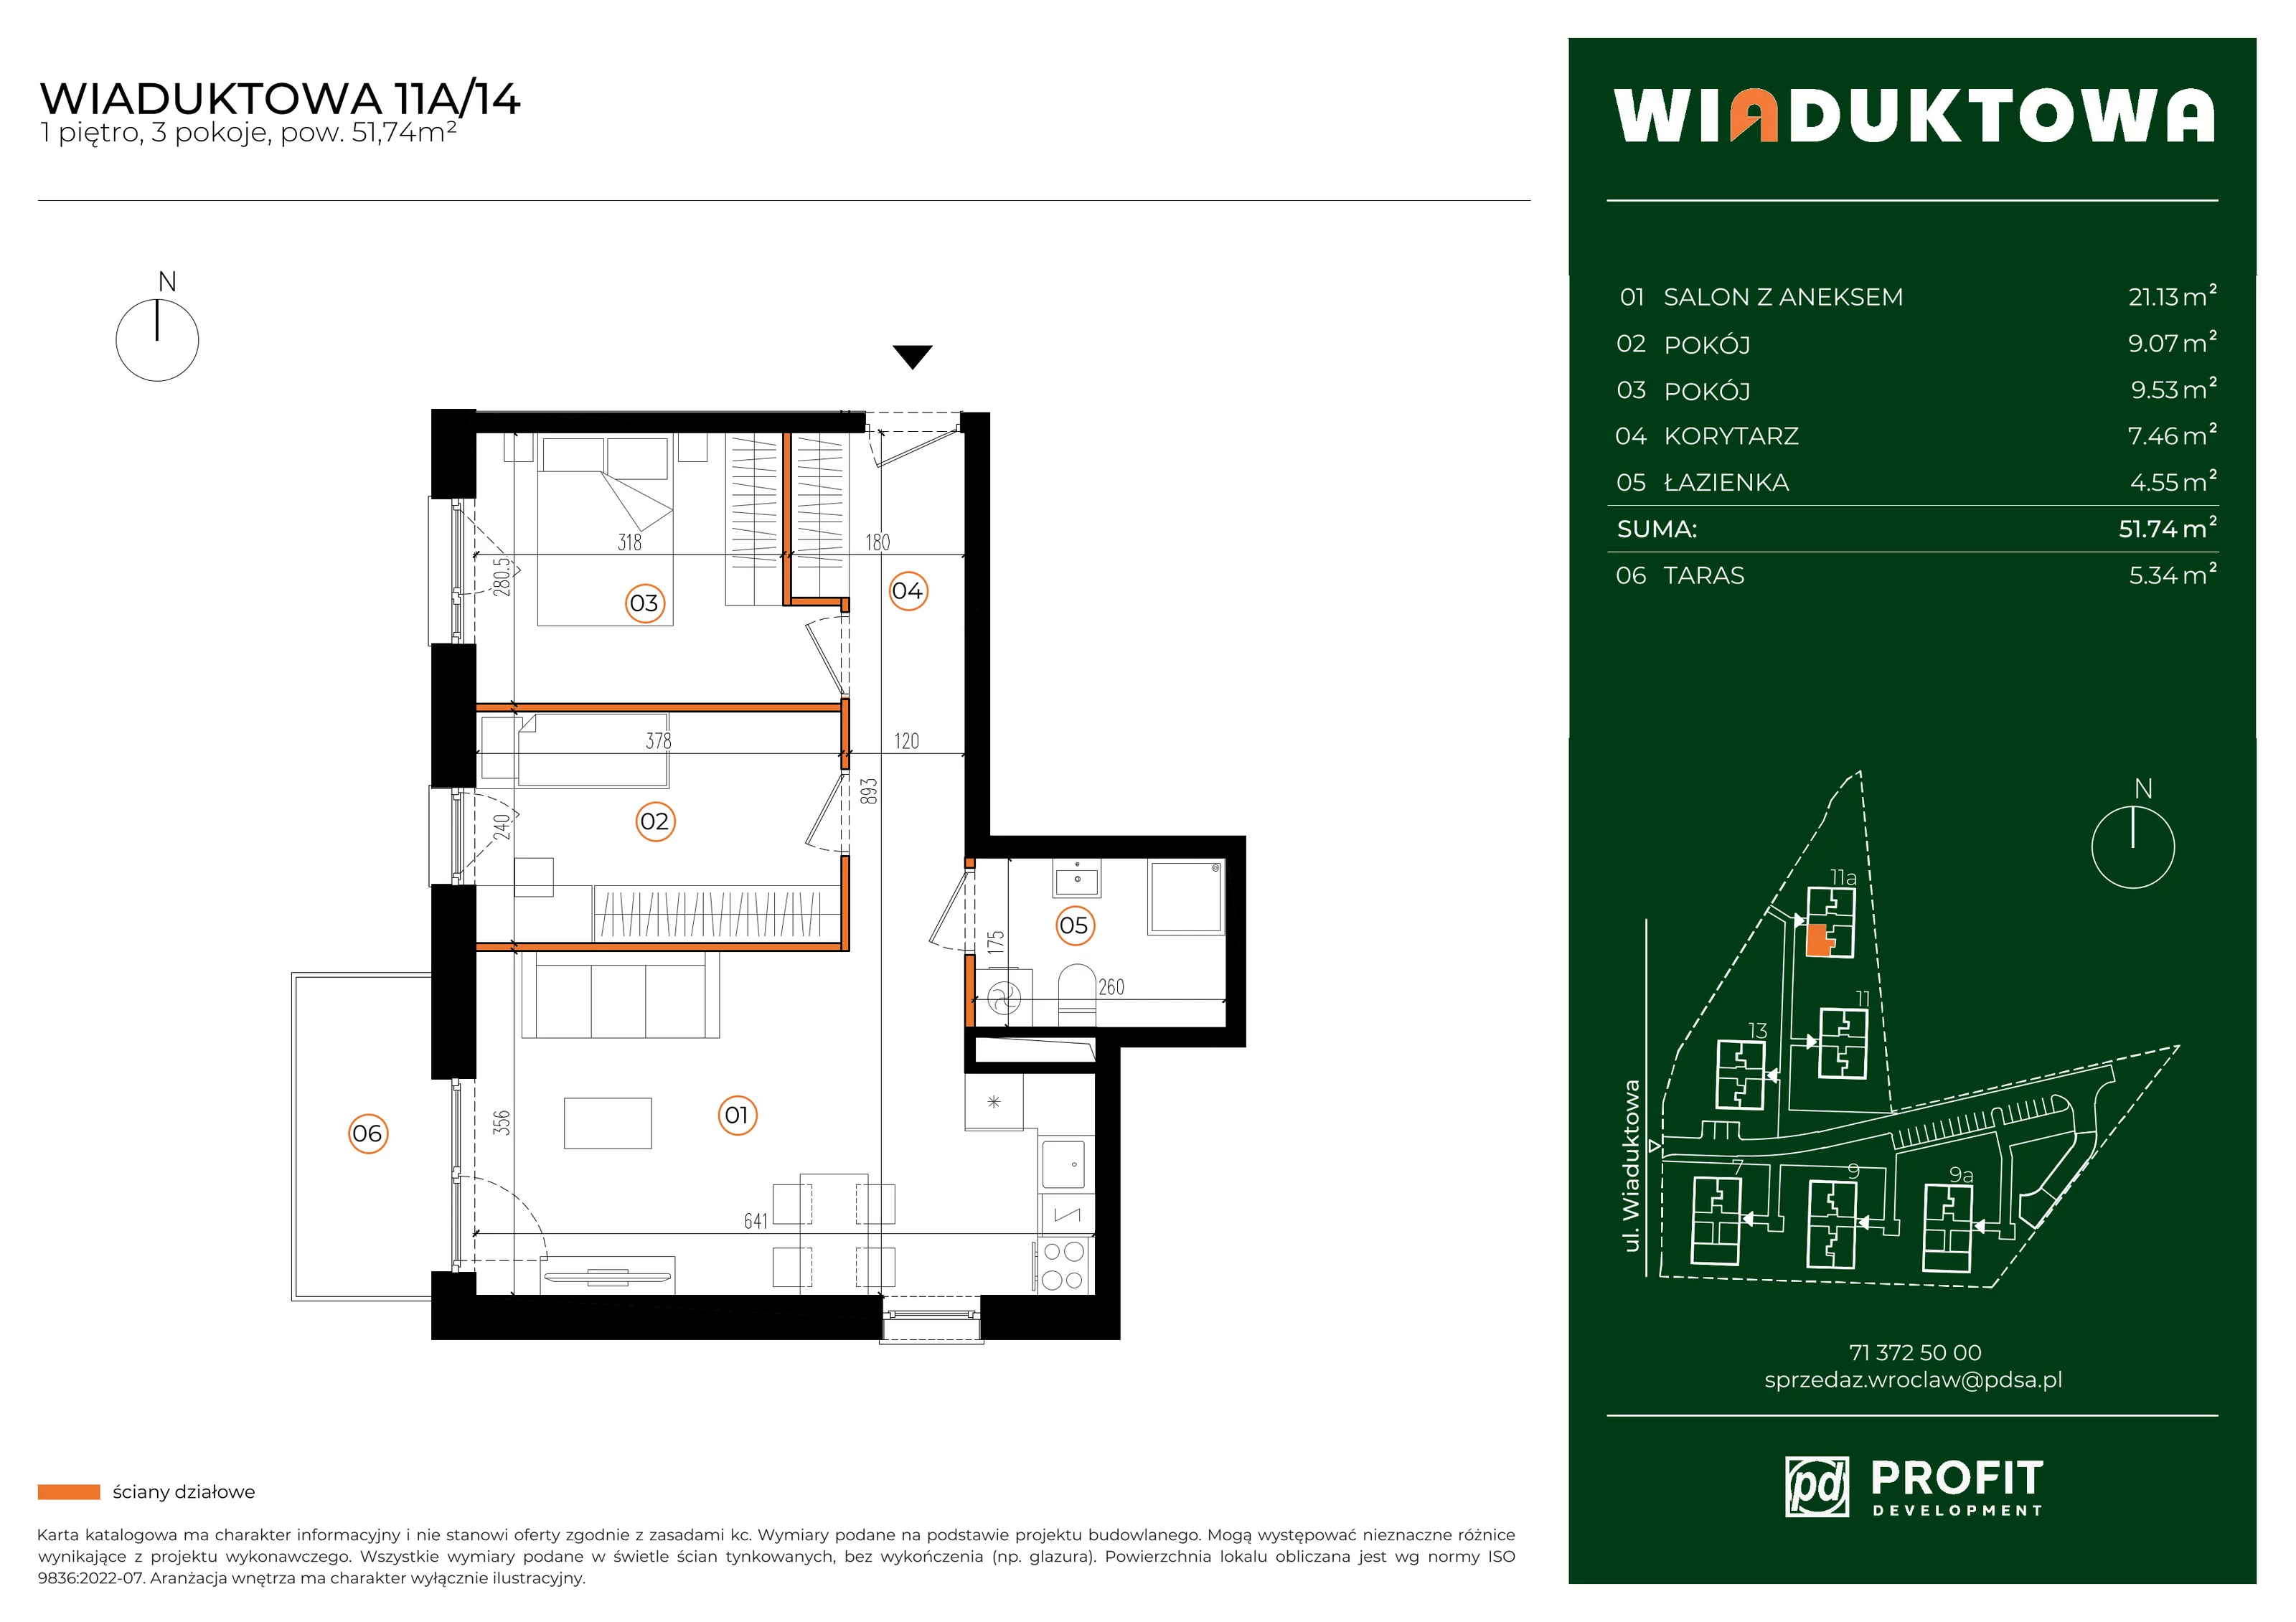 Mieszkanie 51,74 m², piętro 1, oferta nr WI/11A/14, Wiaduktowa, Wrocław, Krzyki-Partynice, Krzyki, ul. Wiaduktowa